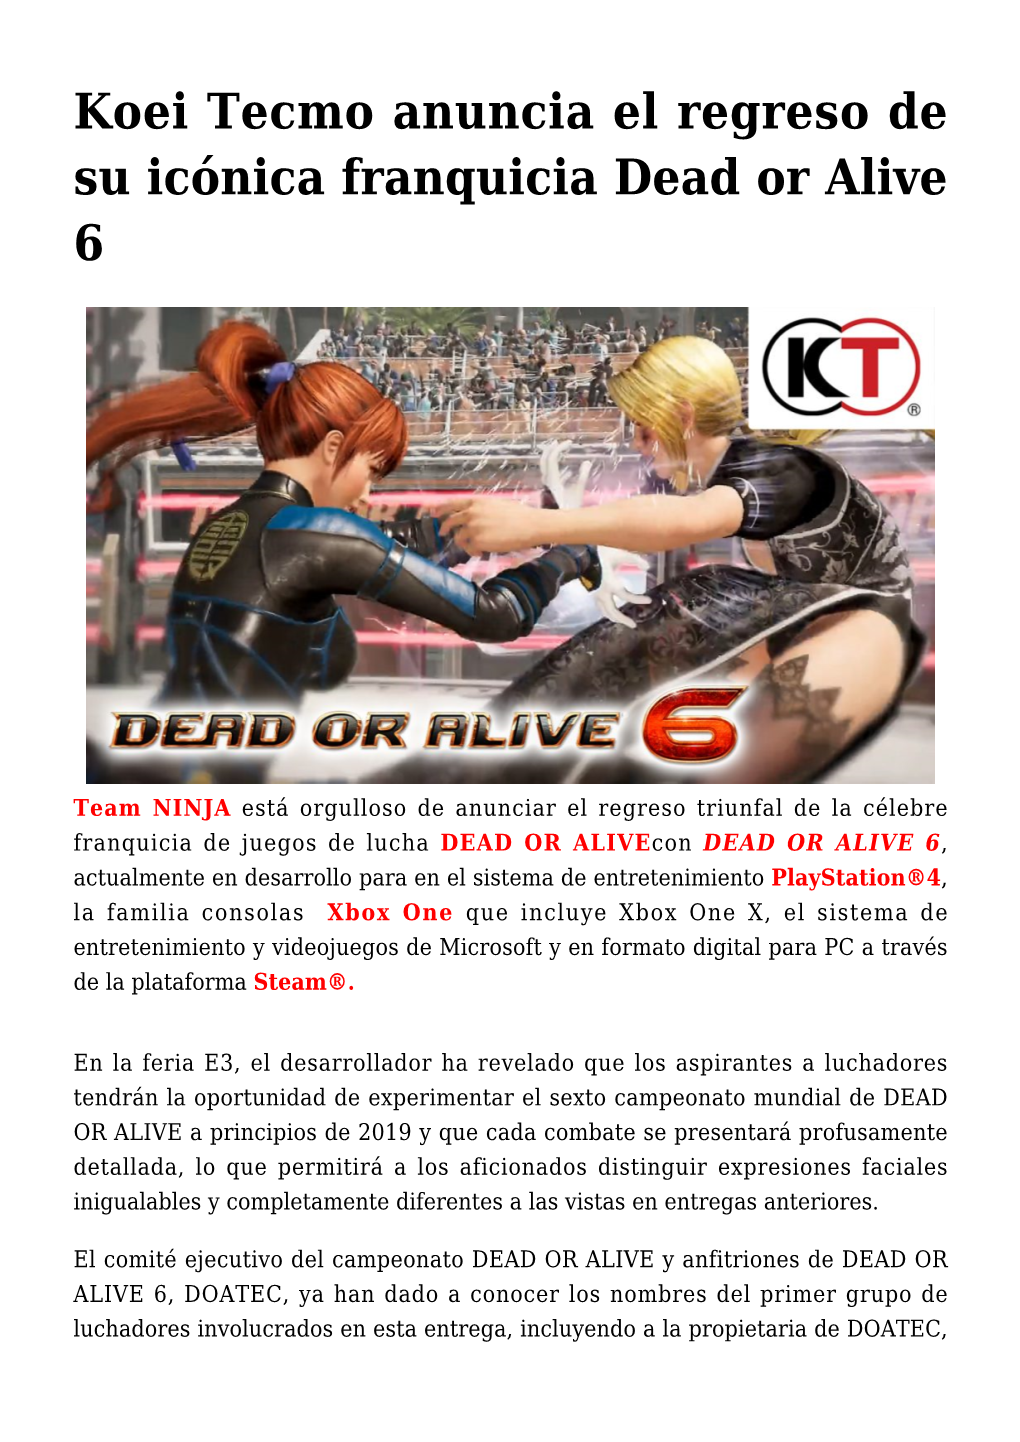 Koei Tecmo Anuncia El Regreso De Su Icónica Franquicia Dead Or Alive 6